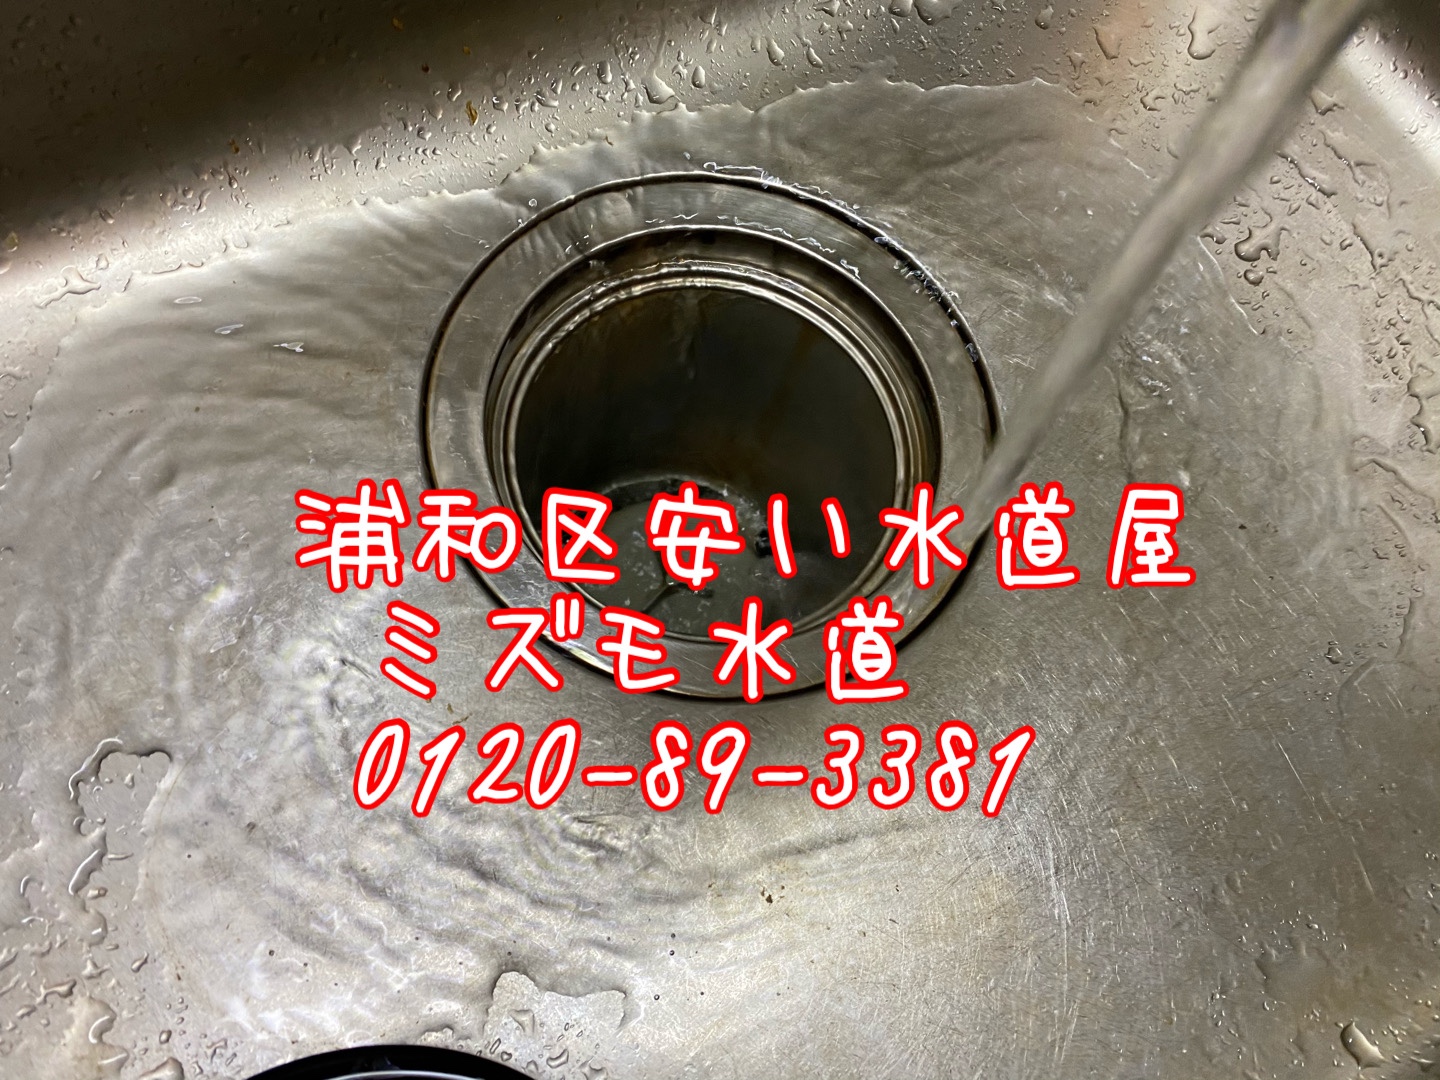 浦和区大原キッチン排水水漏れ修理